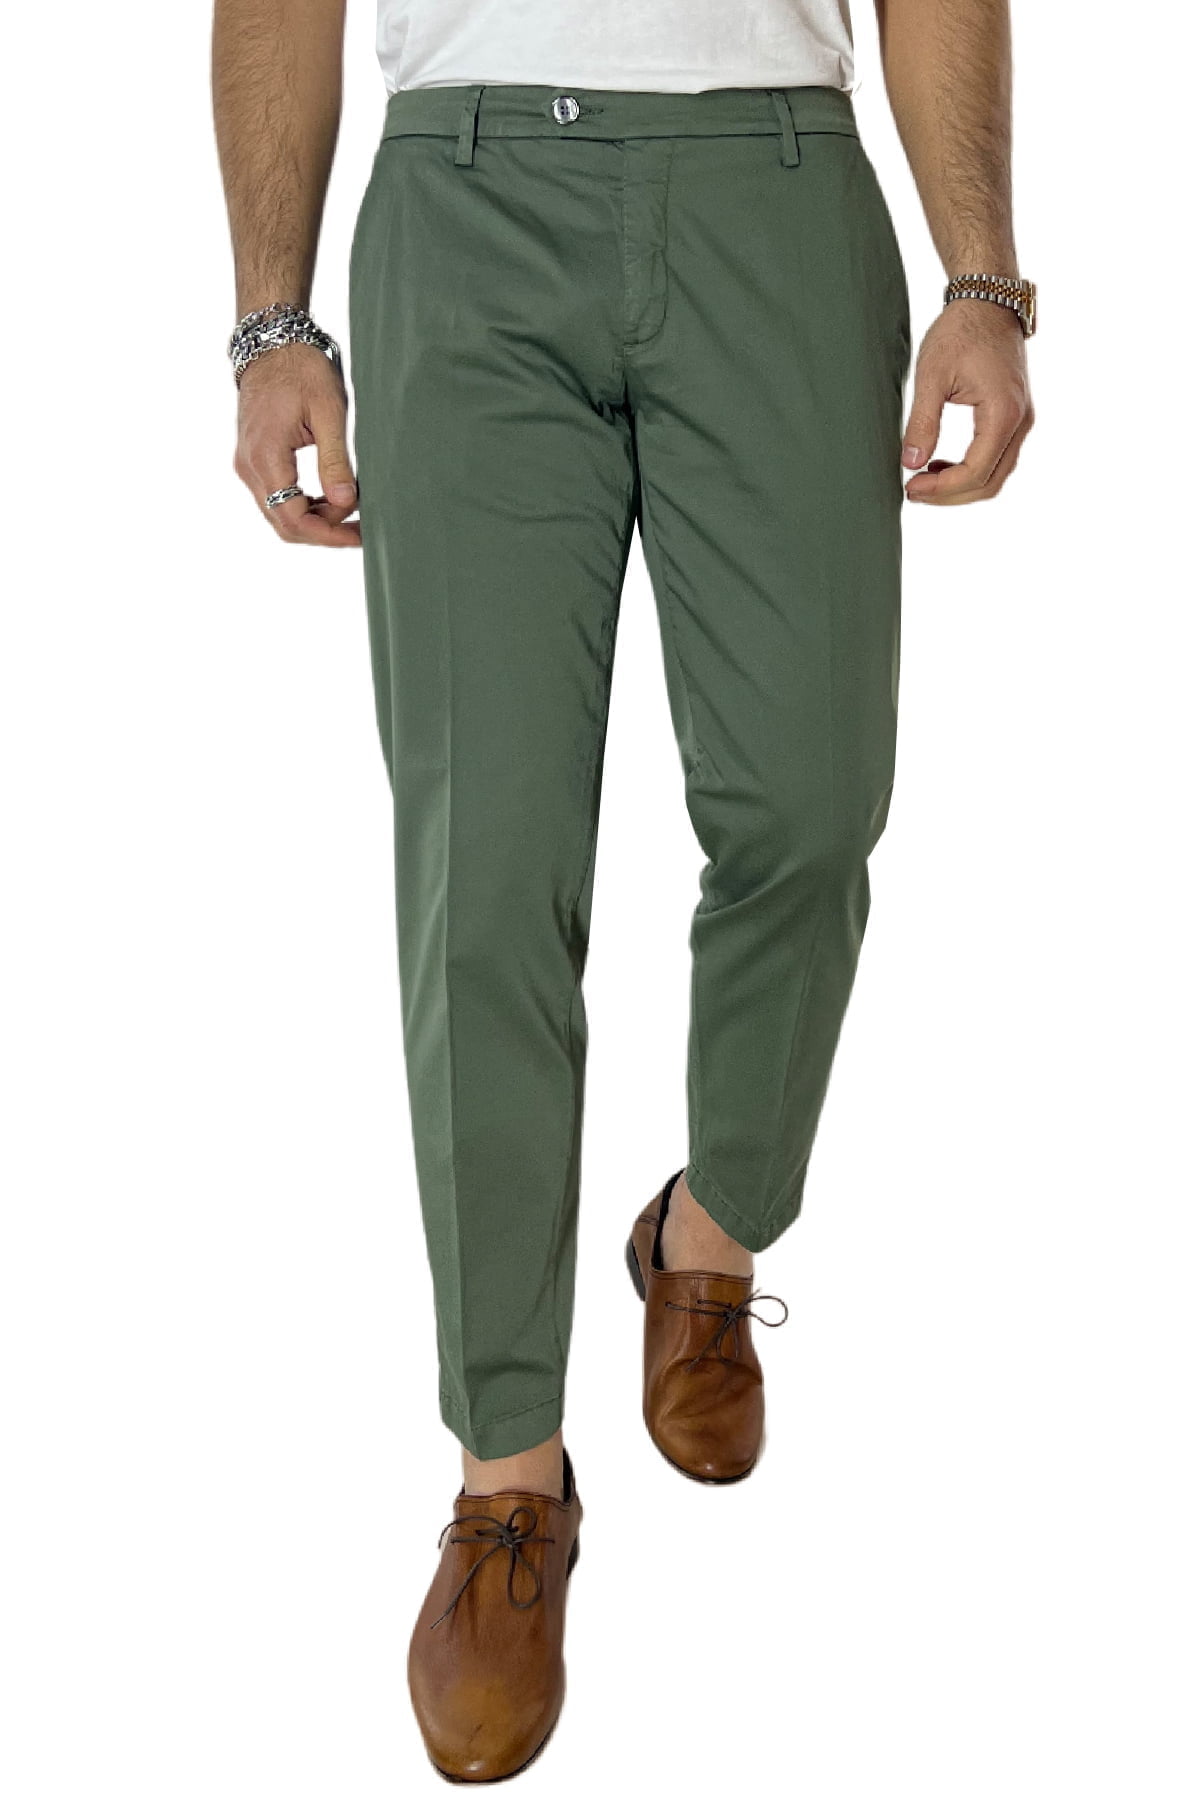 Pantalone uomo verde in Cotone tasca america leggermente elastico estivo